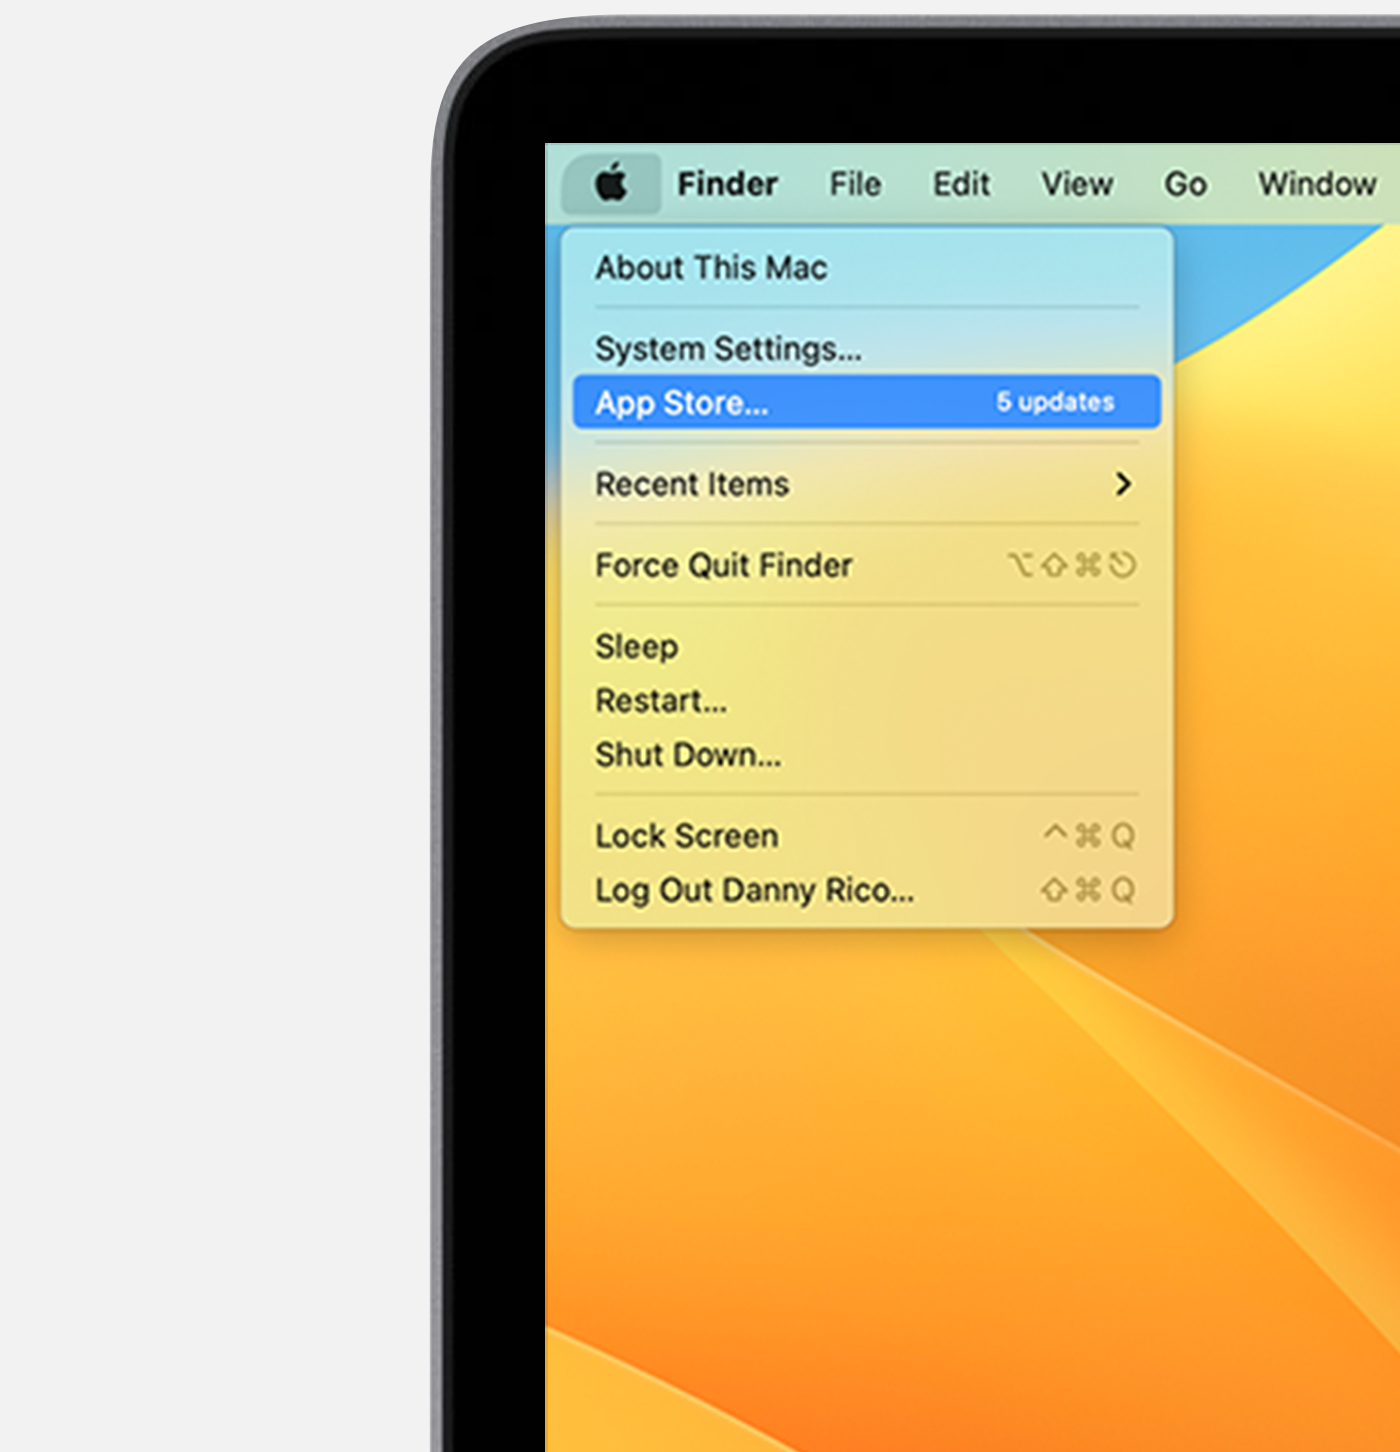 Sklep App Store w menu Apple.